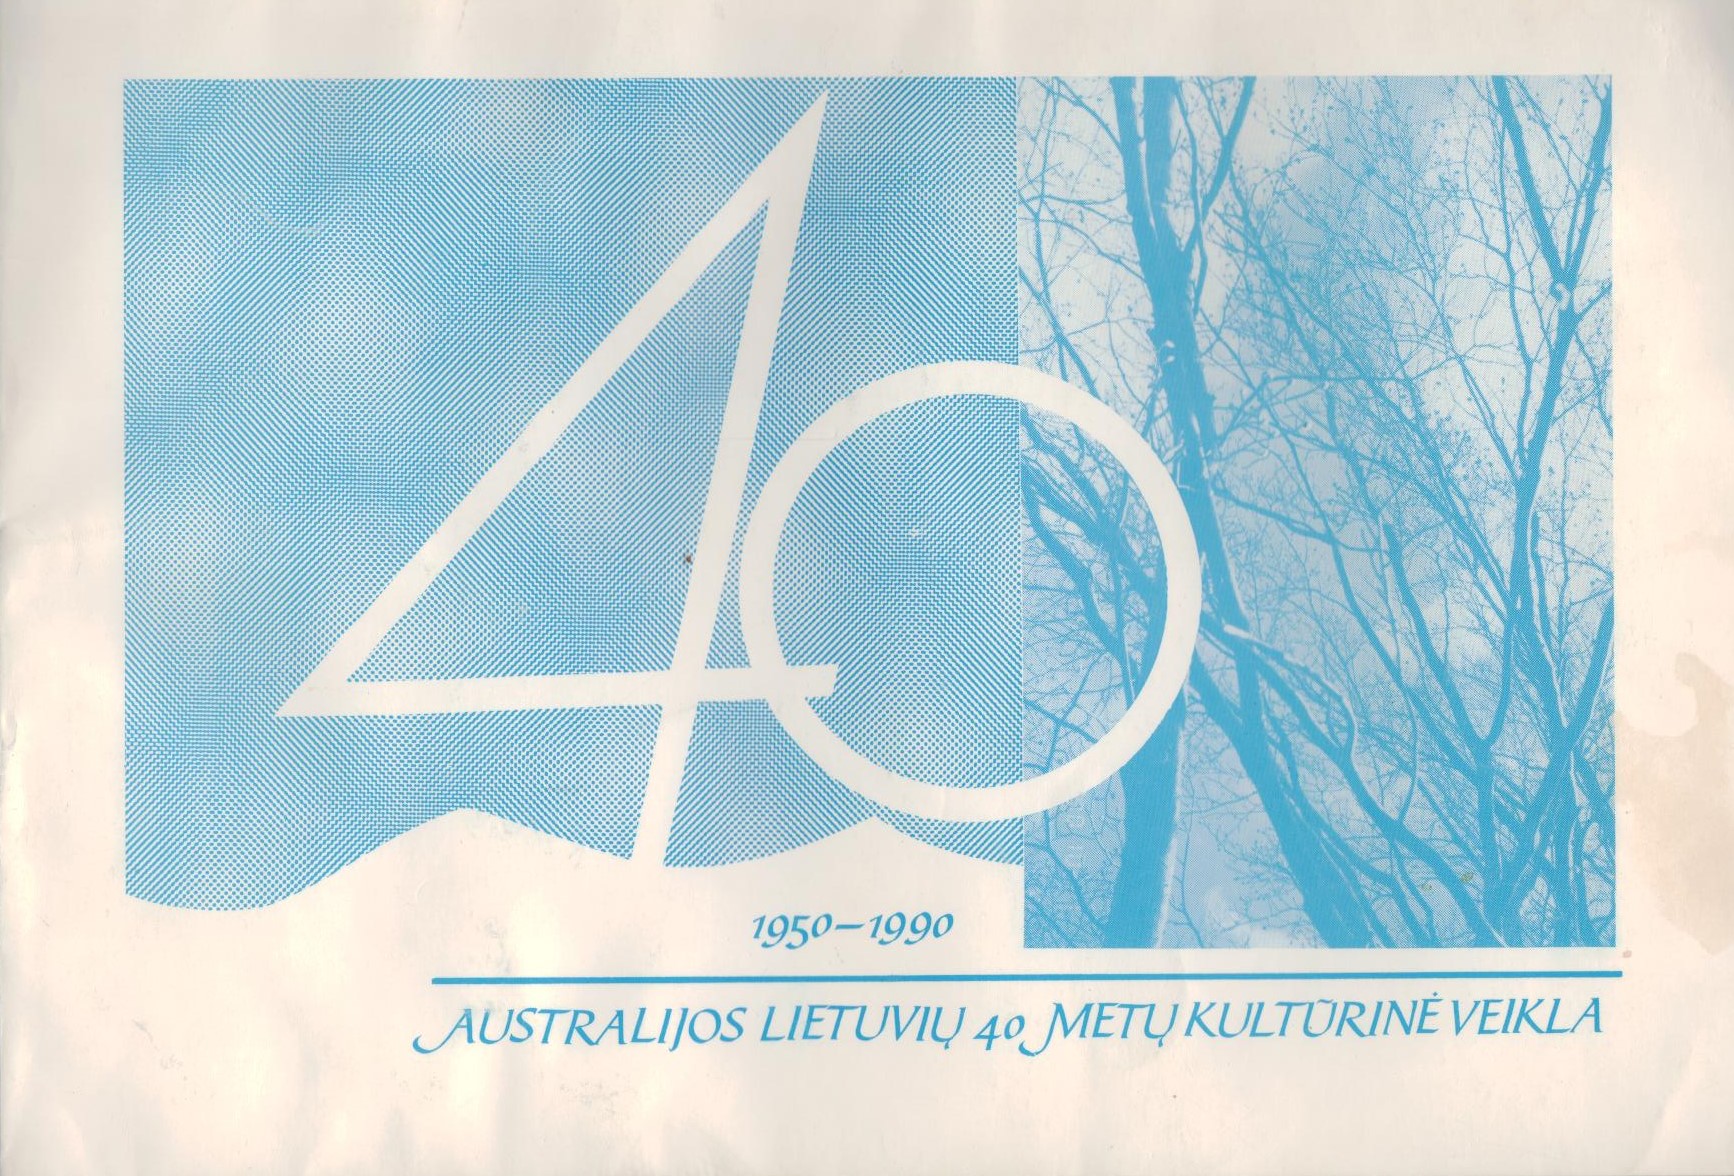 Australijos lietuvių 40 metų kultūrinė veikla. Melburnas. 1990 m. MLLM P31434